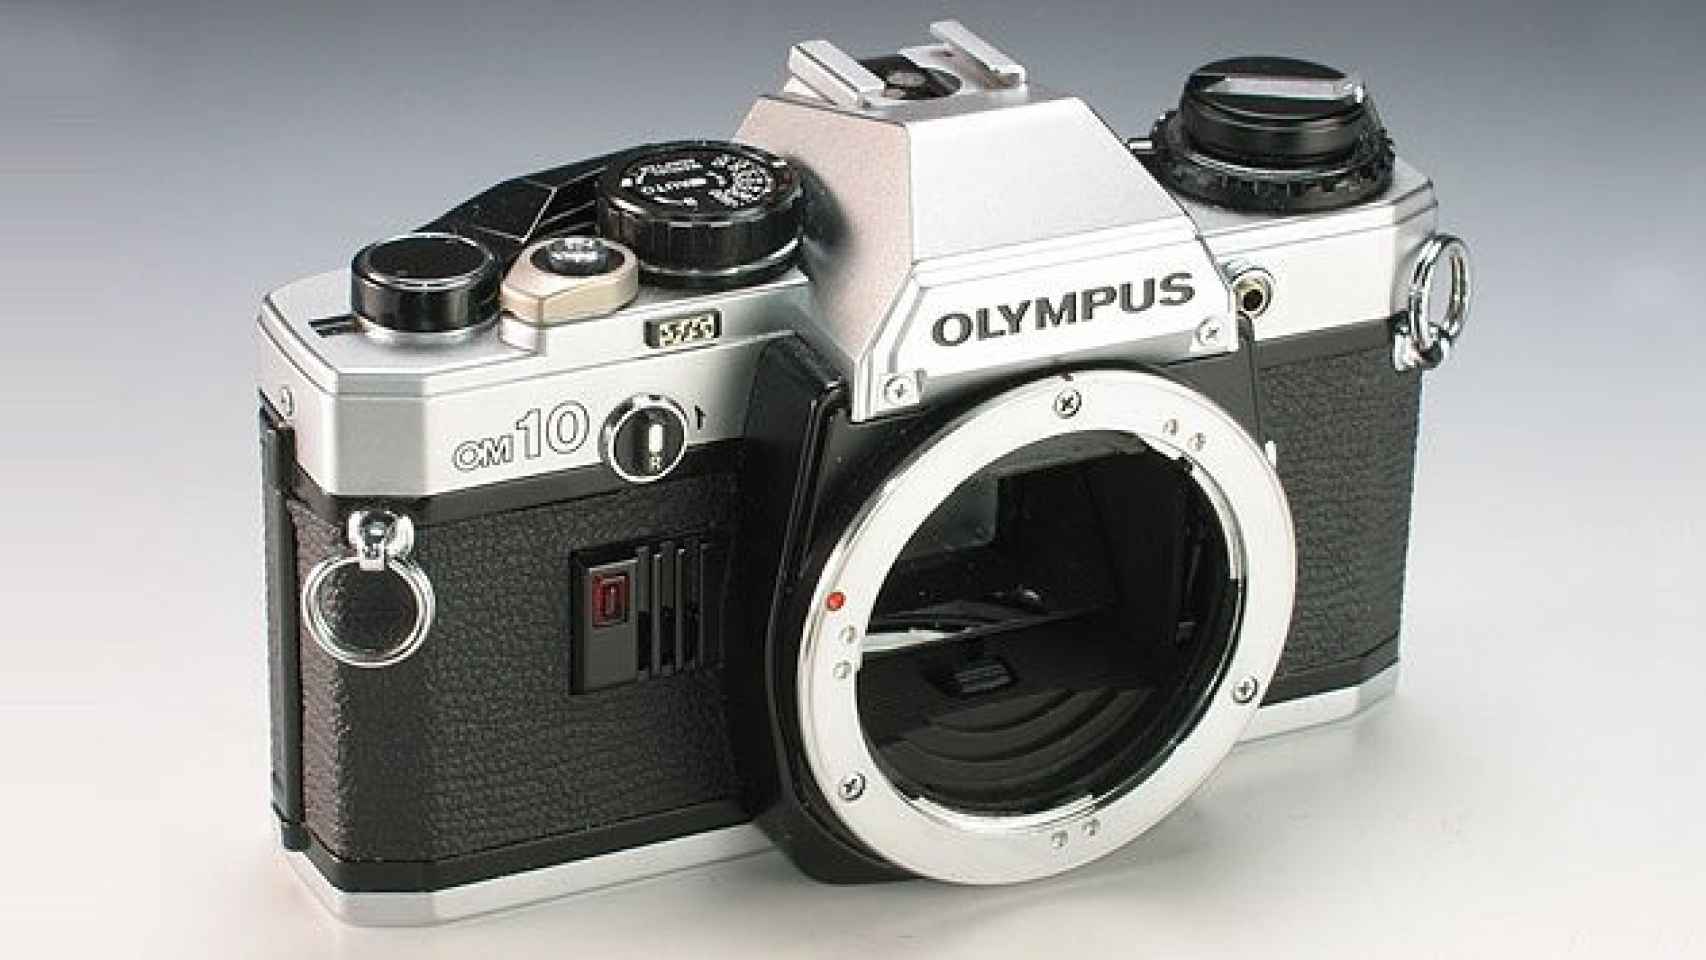 Modelo de una de las cámaras fotográficas Olympus / CG